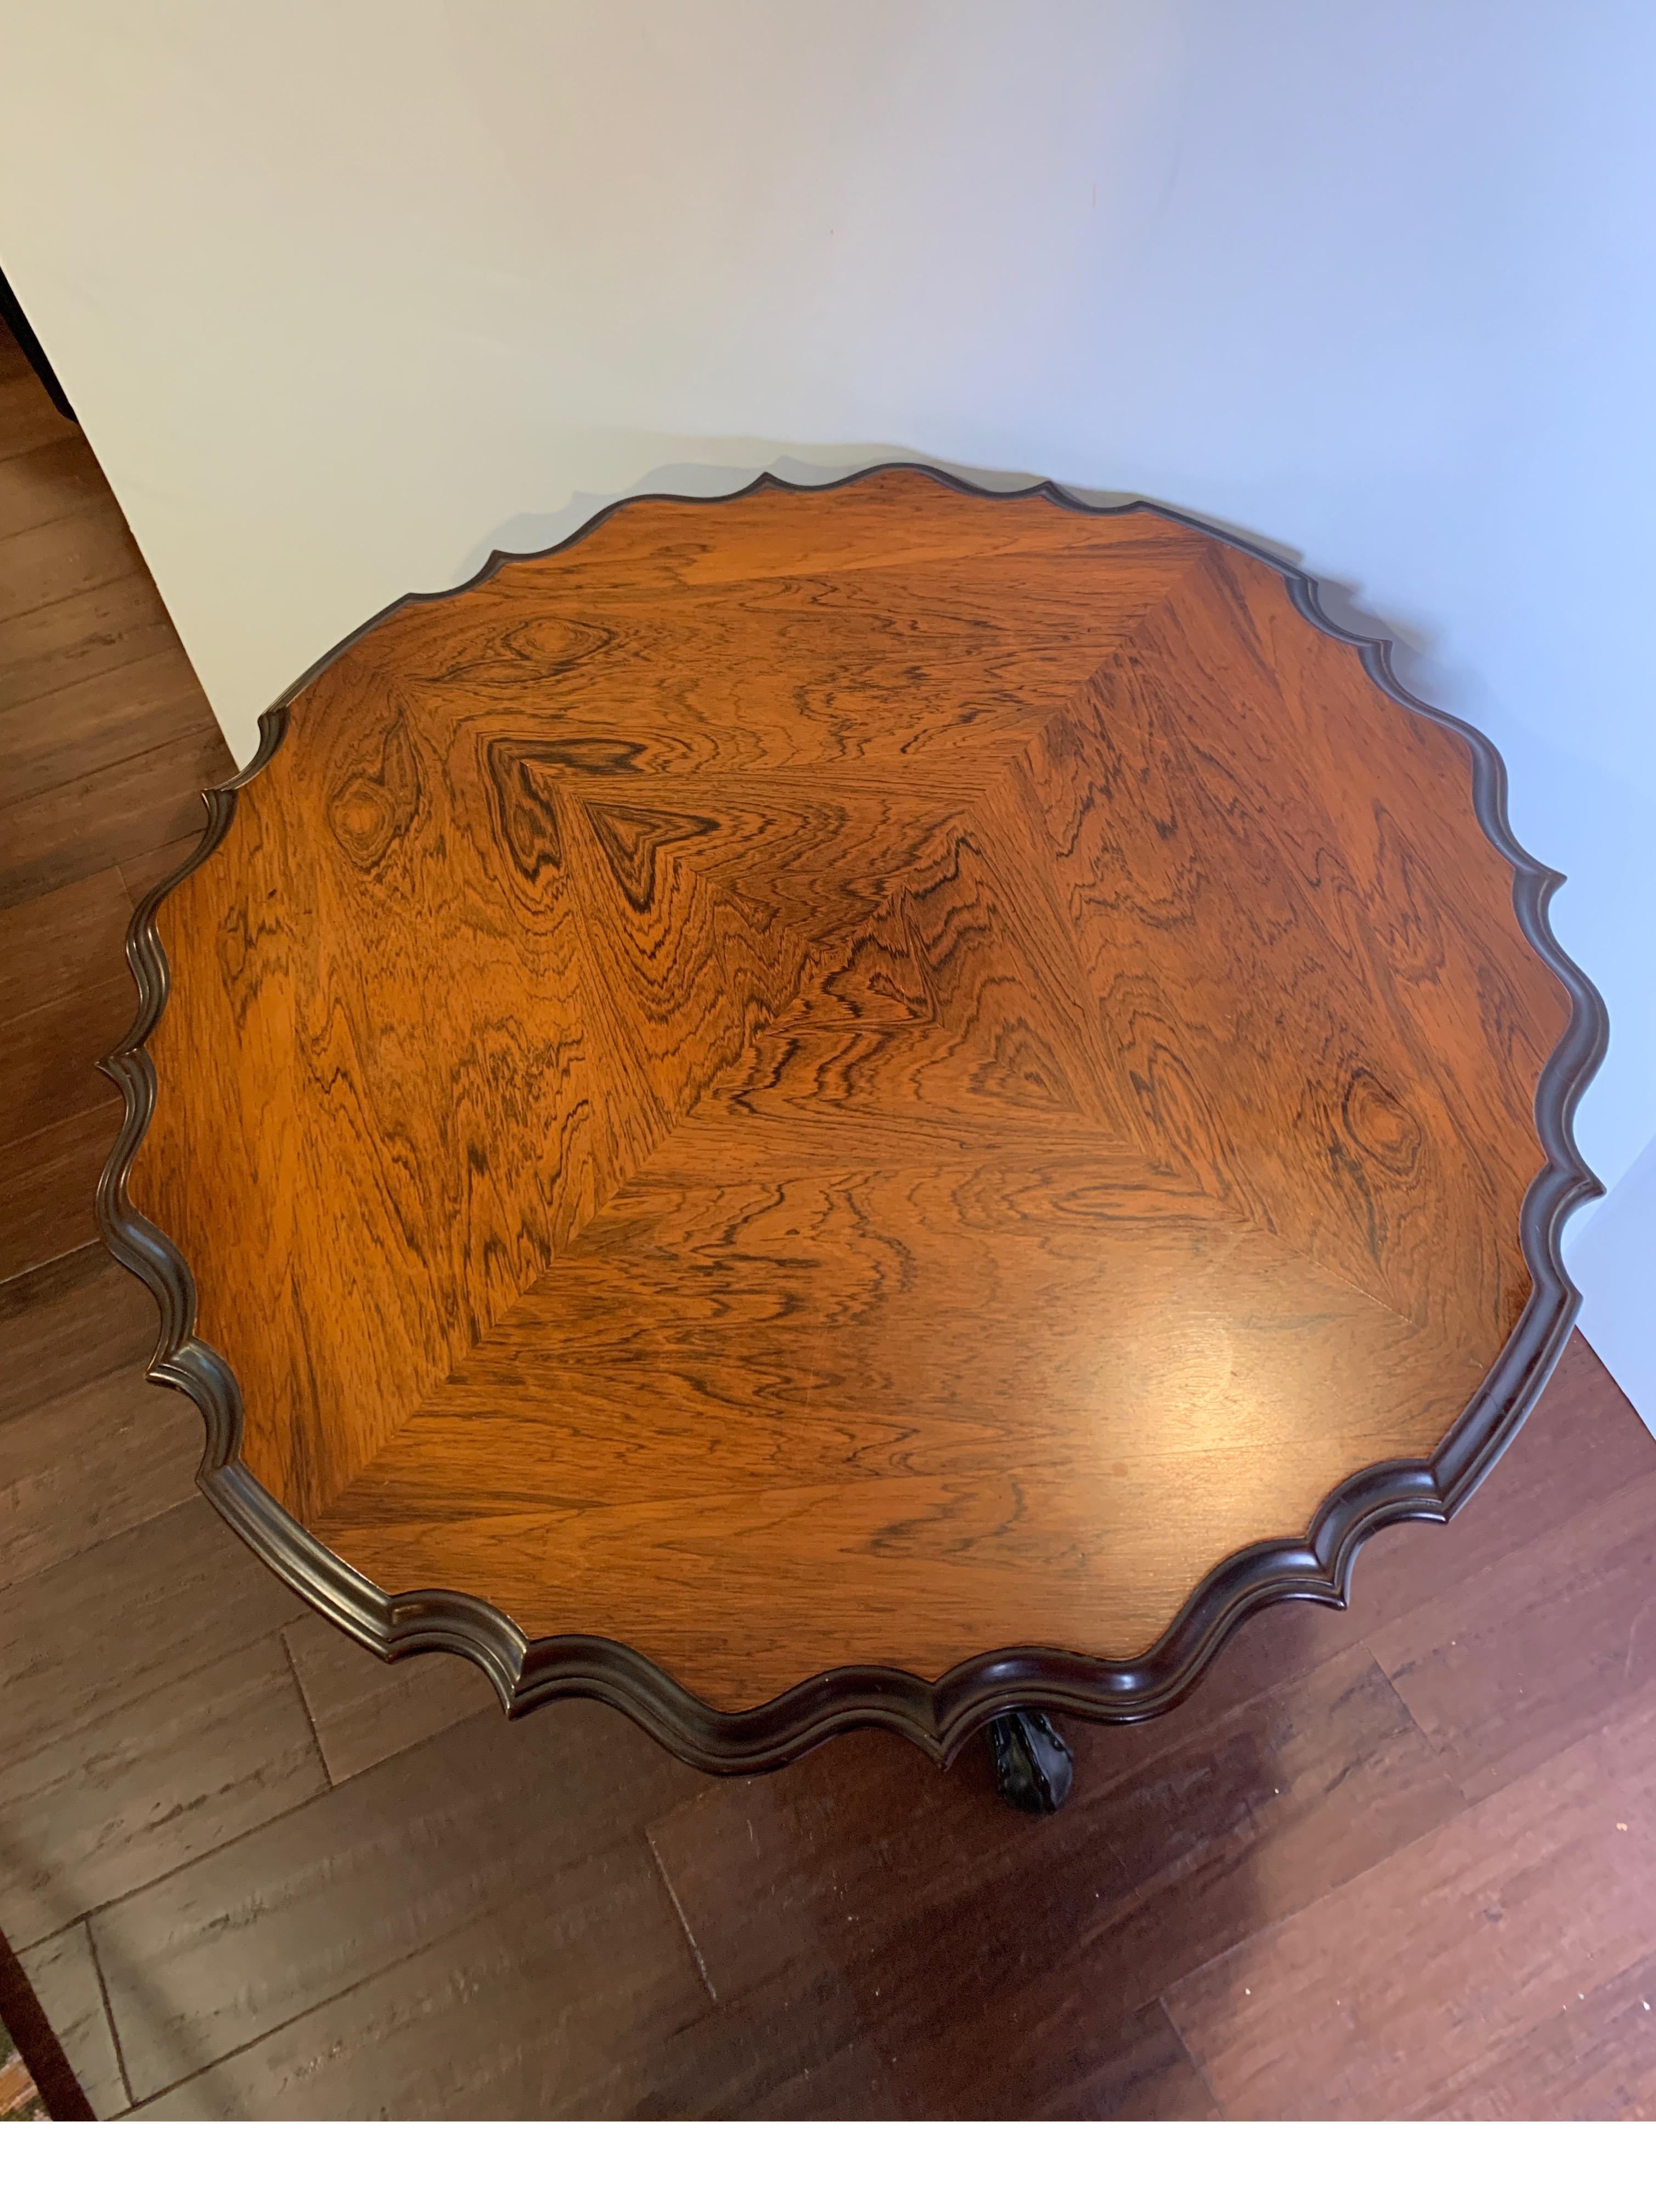 Schön geschnitzter Tisch mit kippbarer Platte, Mahagoni mit Palisanderplatte, um 1930-1940
Schöner Tisch für fast jeden Raum und kann auch mit gekippter Platte ausgestellt werden.